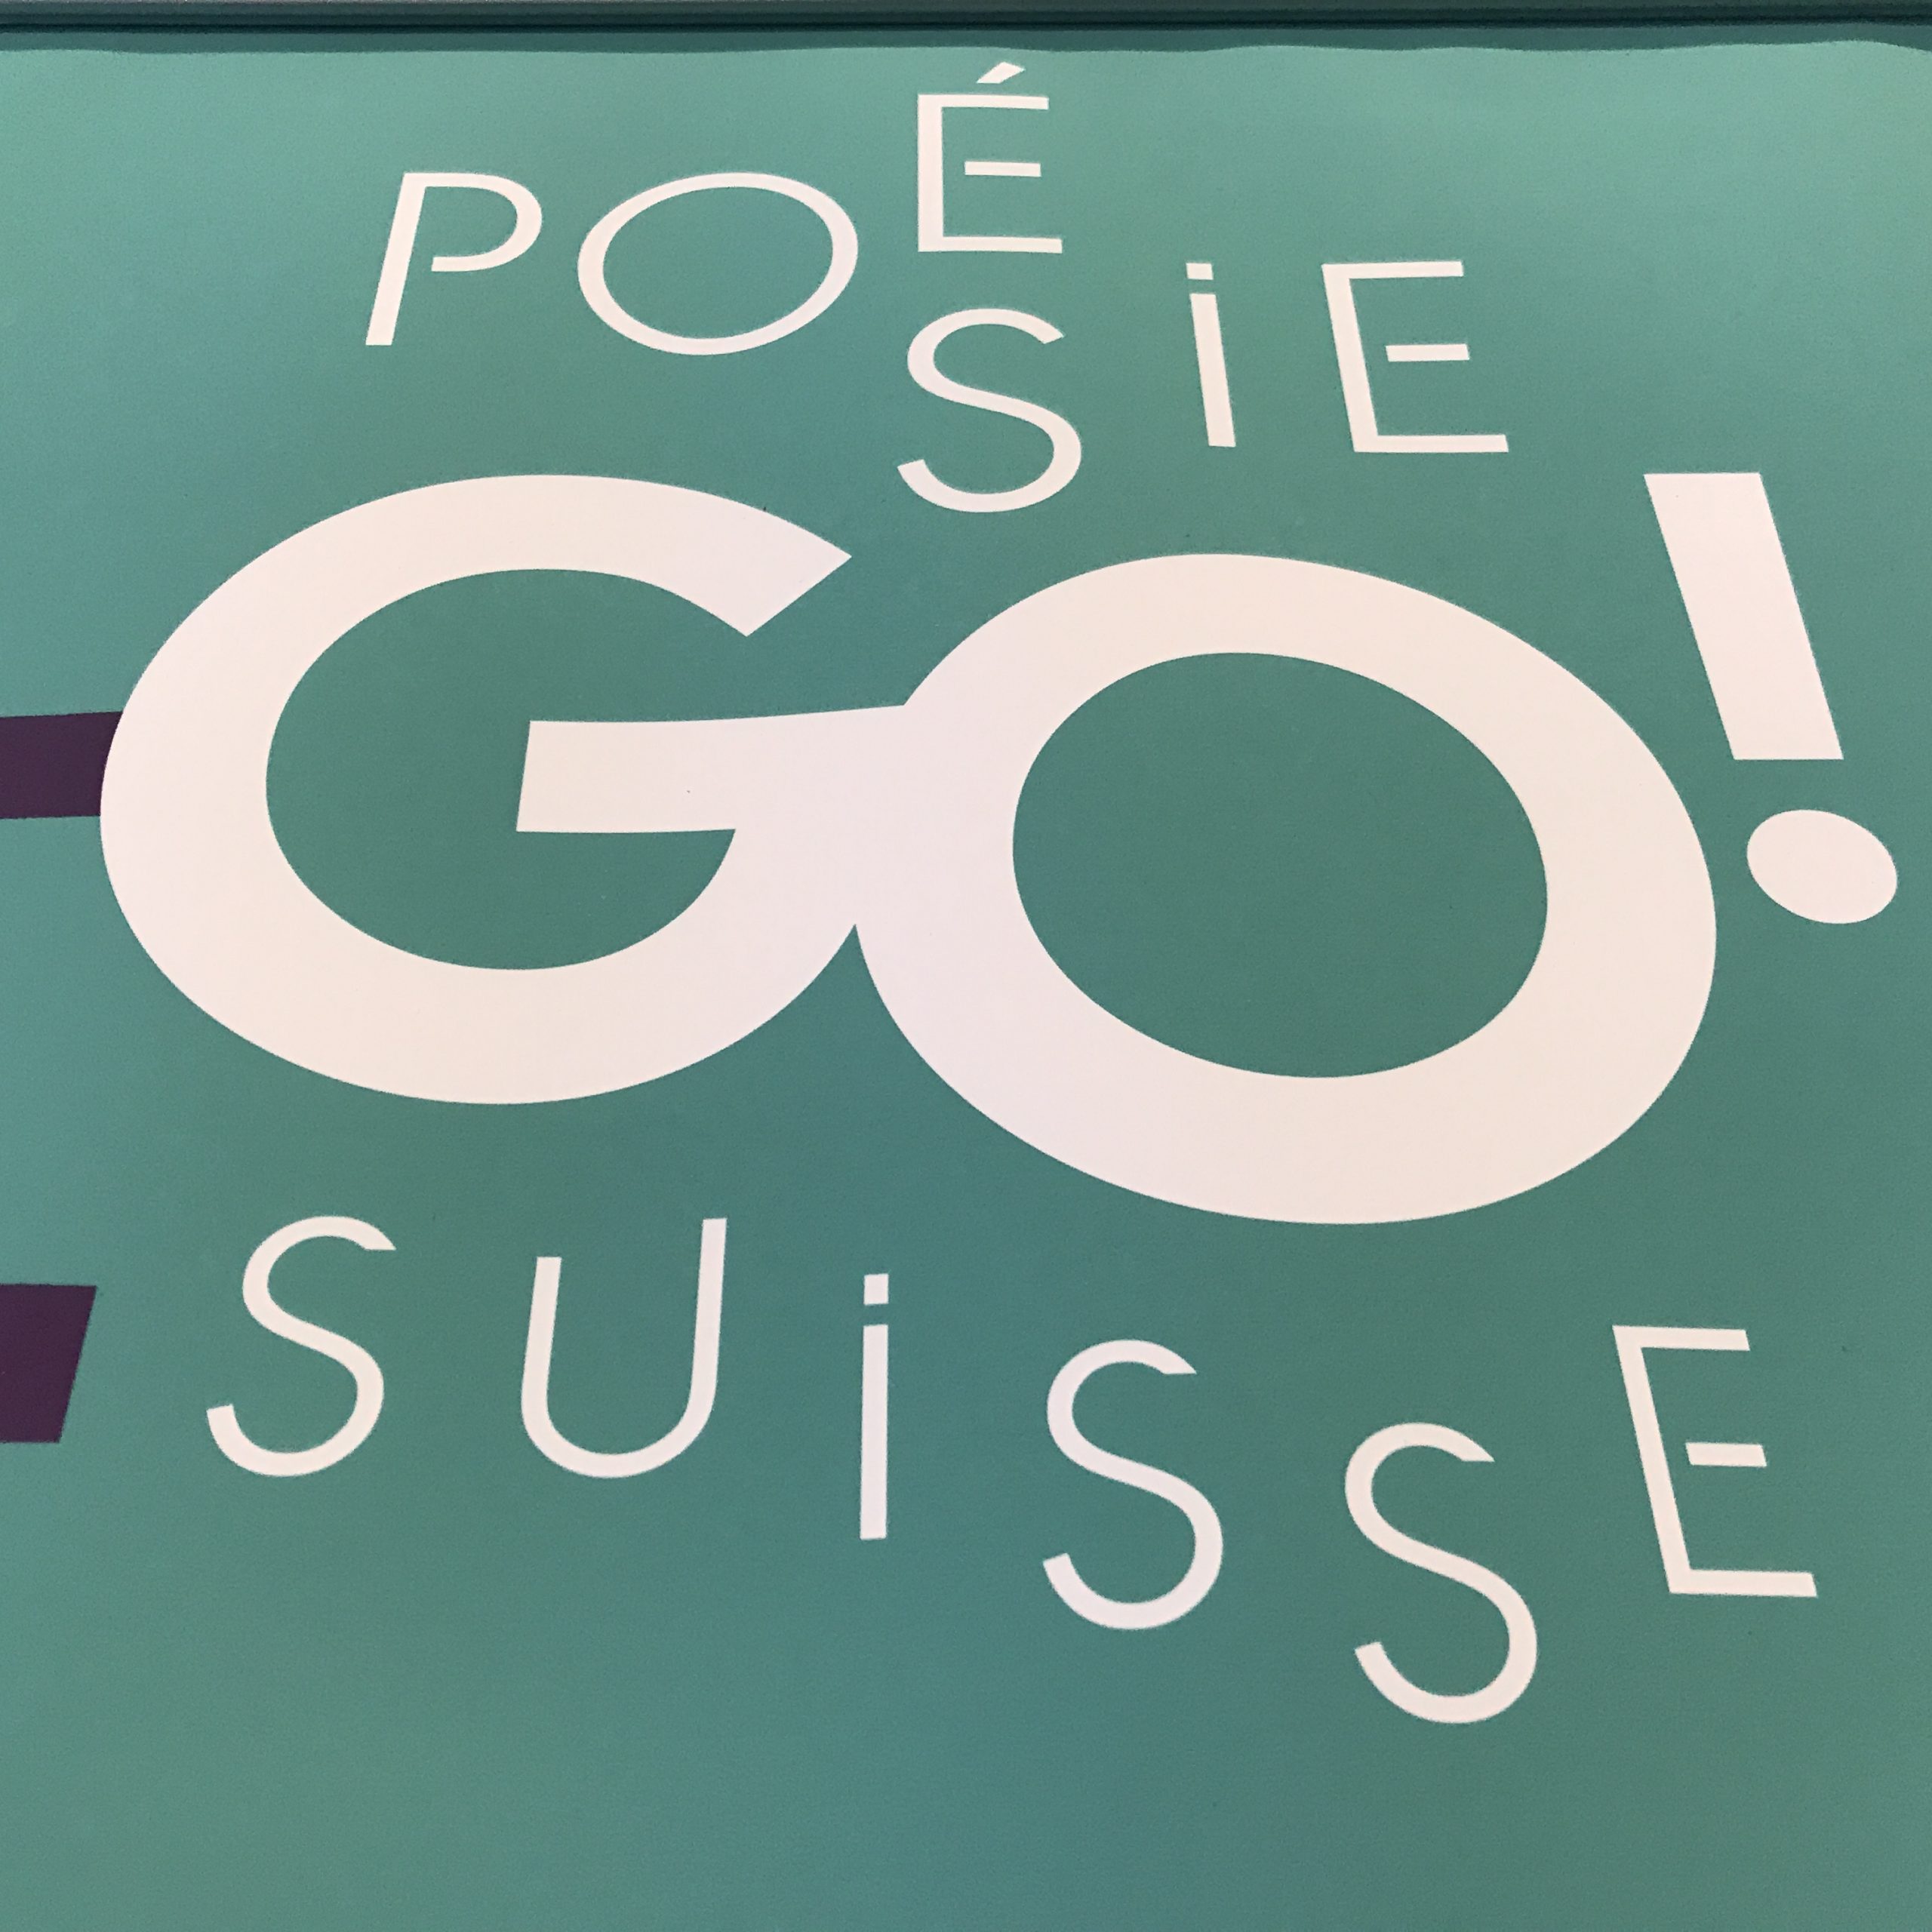 PoésieGo ! Projet inédit de balados avec six poètes québécois et six poètes suisses